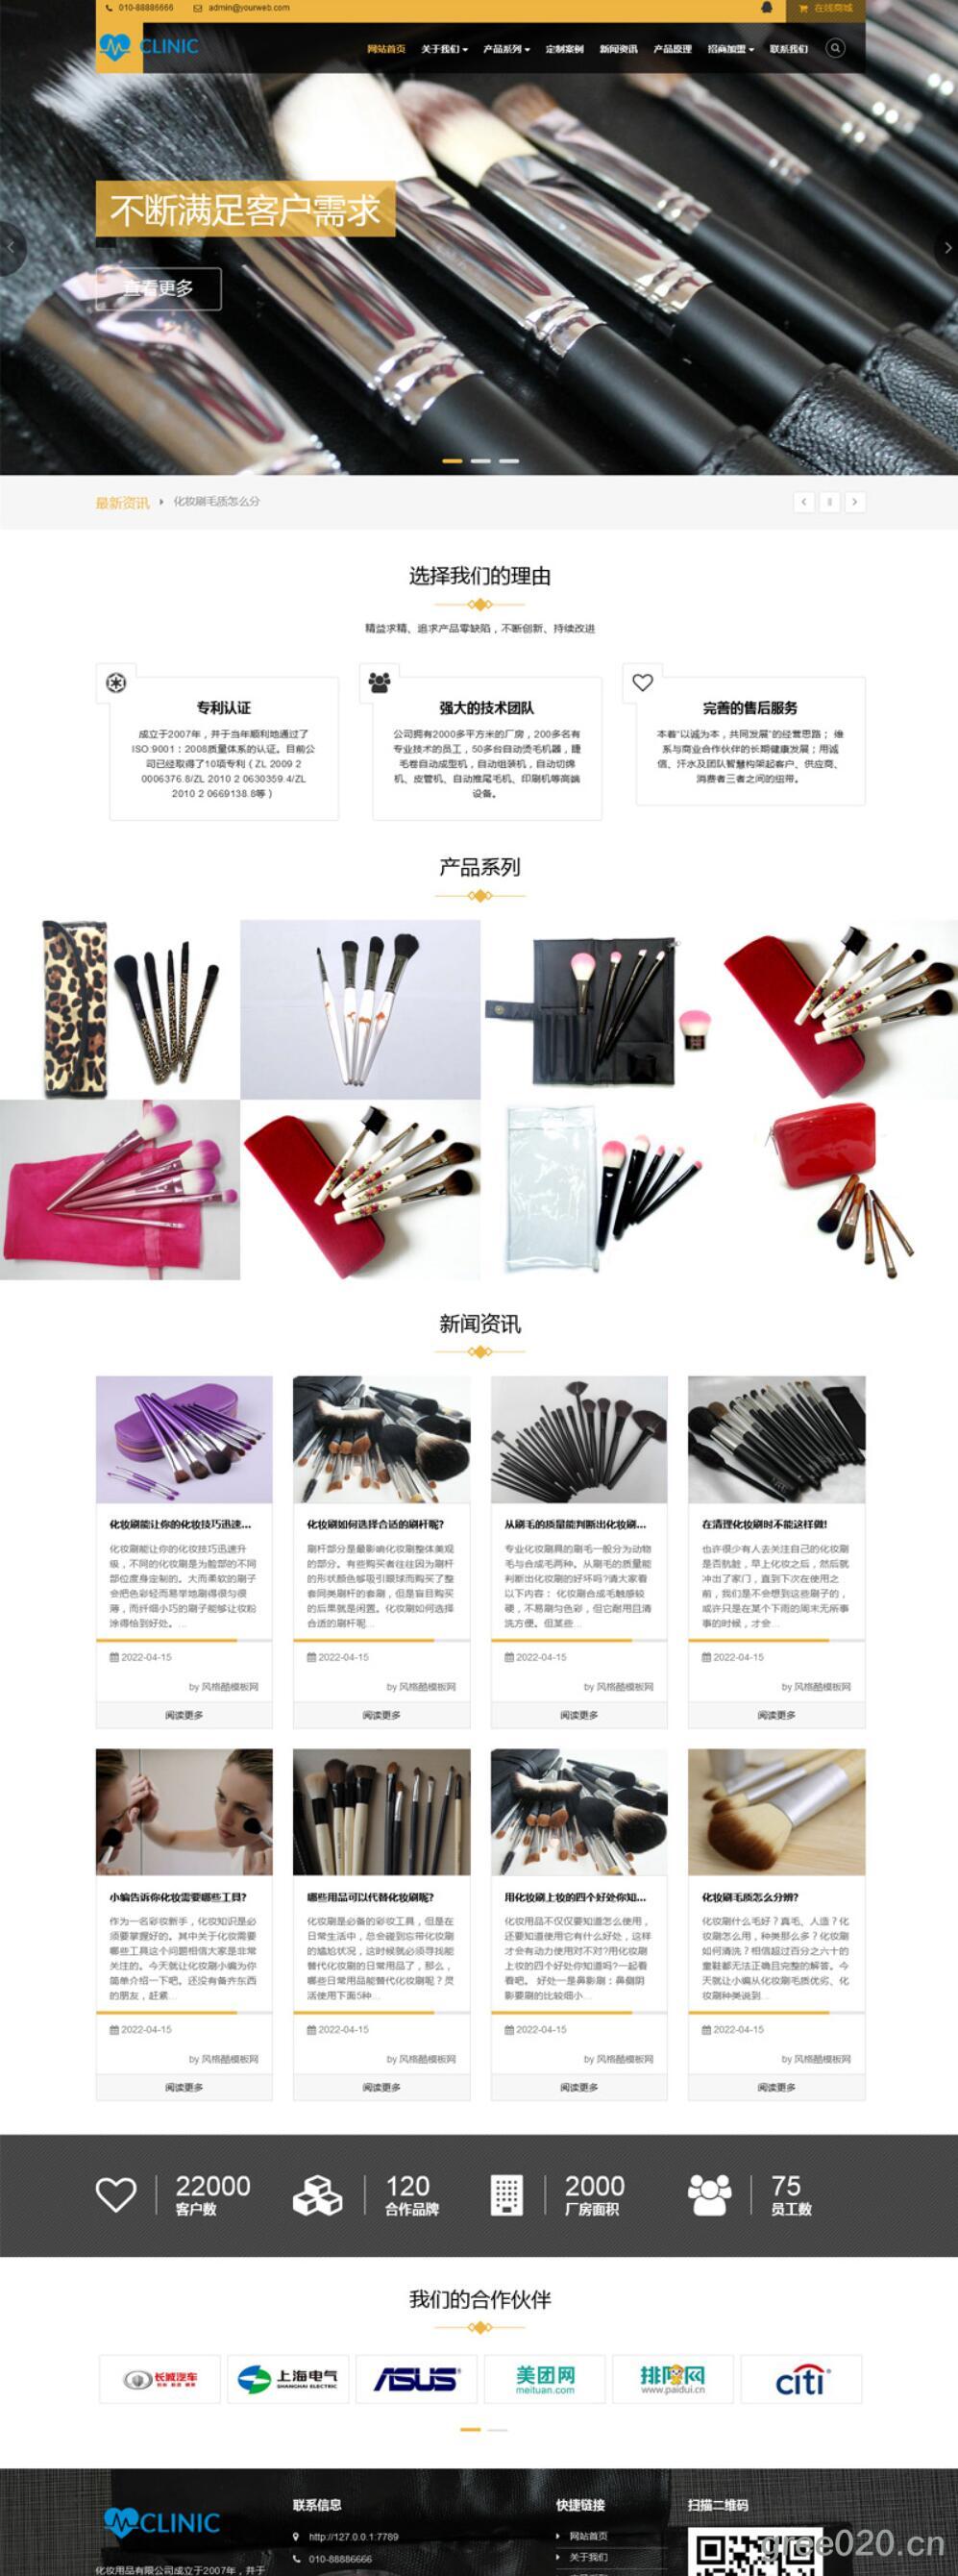 化妆美妆用品类网站模板 化妆品公司官网源码下载